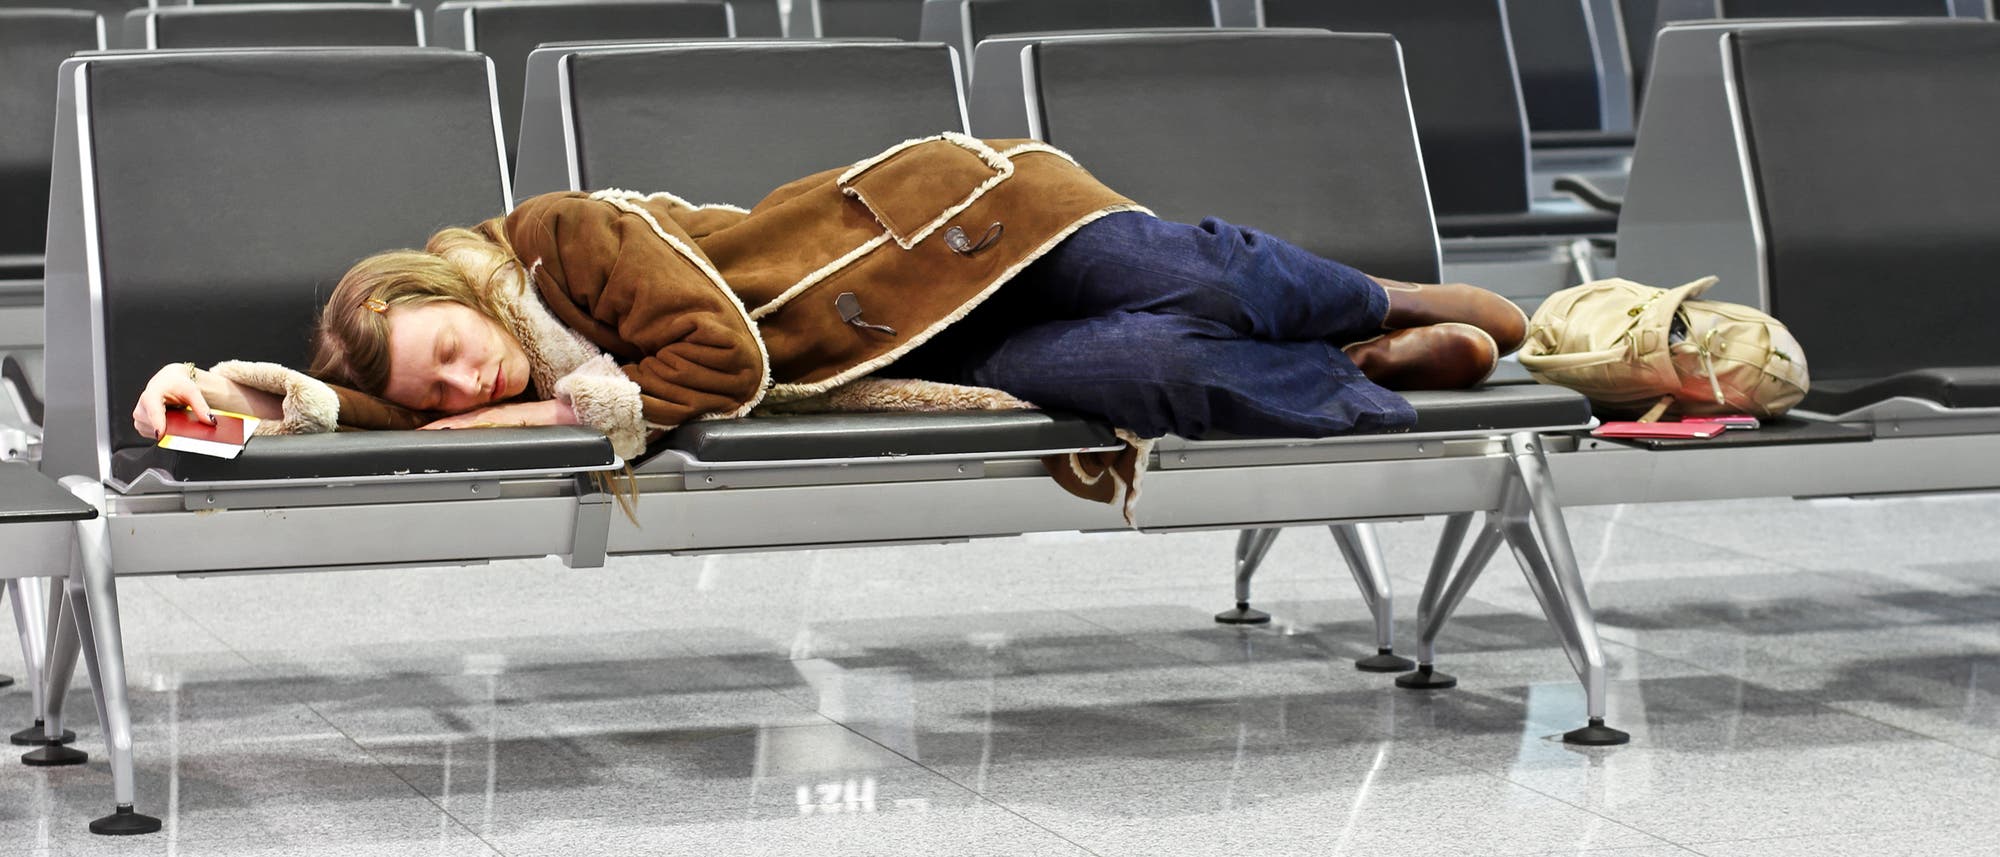 Eine Flugreisende schläft am Flughafen